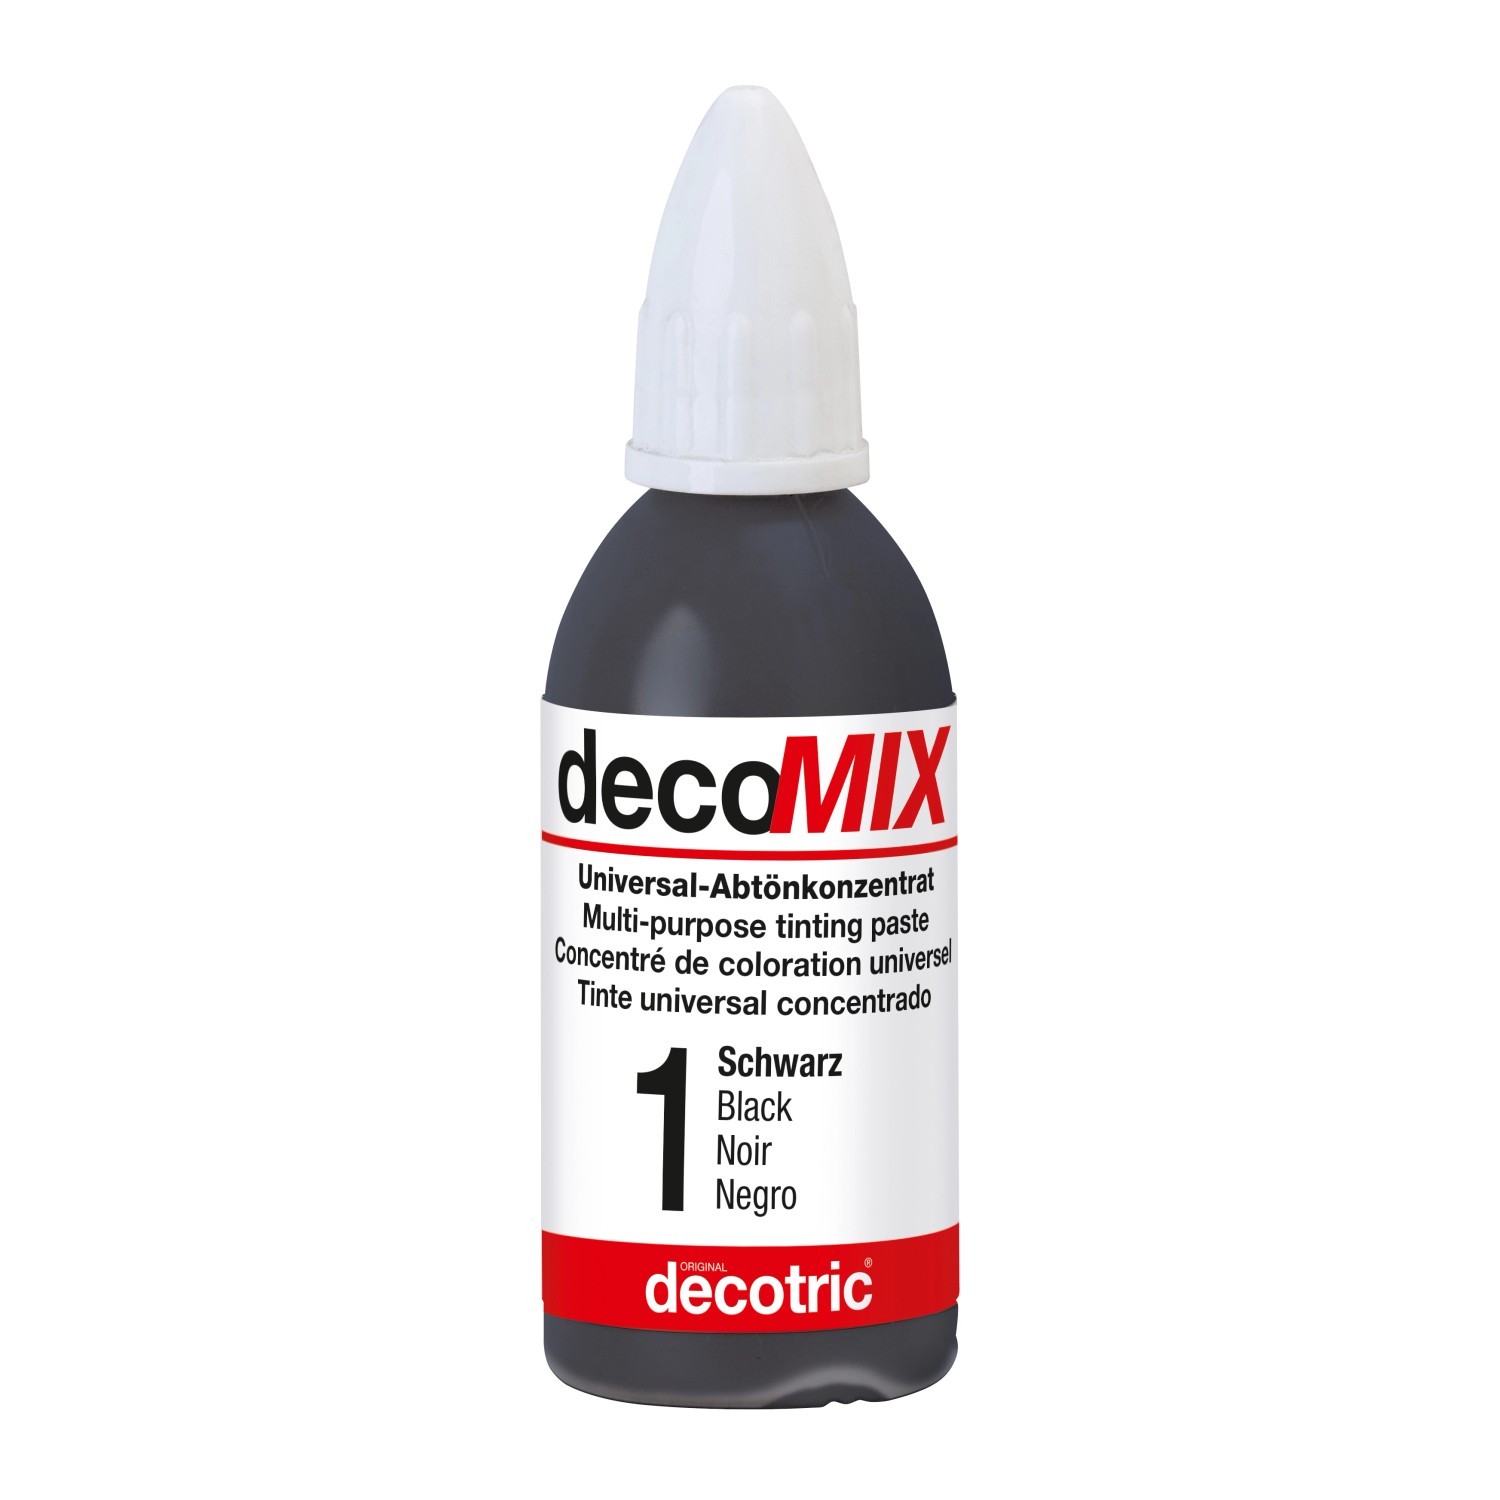 Decomix Universal-Abtönkonzentrat Schwarz 20 ml von decotric